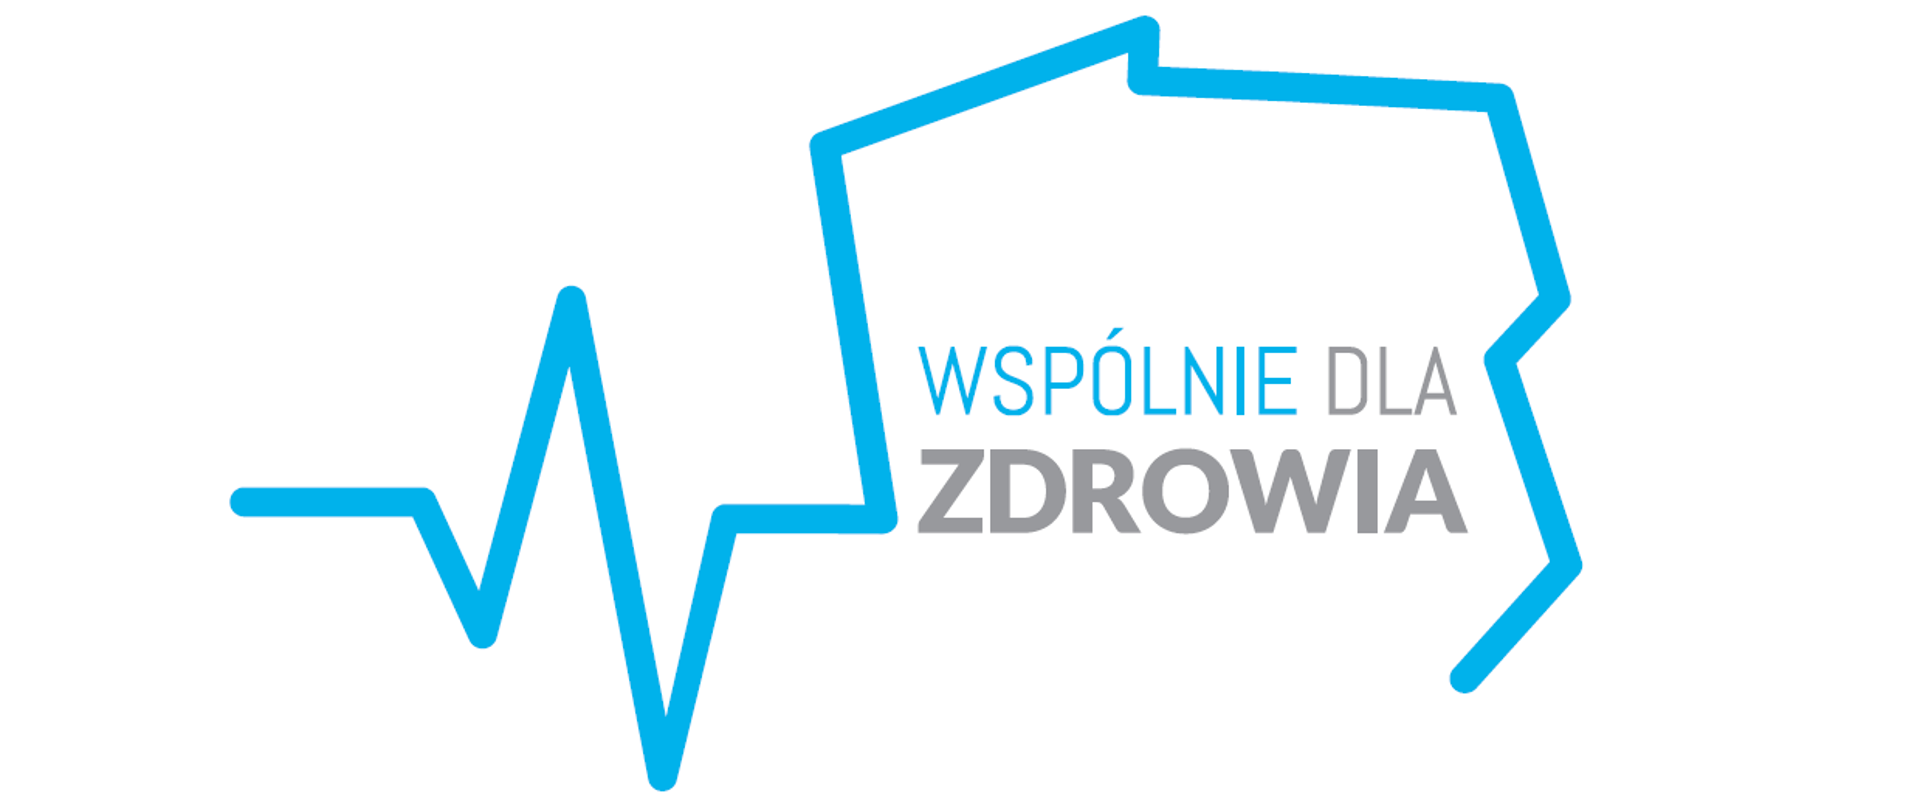 Napis "Wspólnie dla zdrowia" wpisany w niebieski kontur Polski, który przechodzi w linię kojarzącą się z krzywą elektrokardiograficzną, czyli linię która odzwierciedla pracę serca.